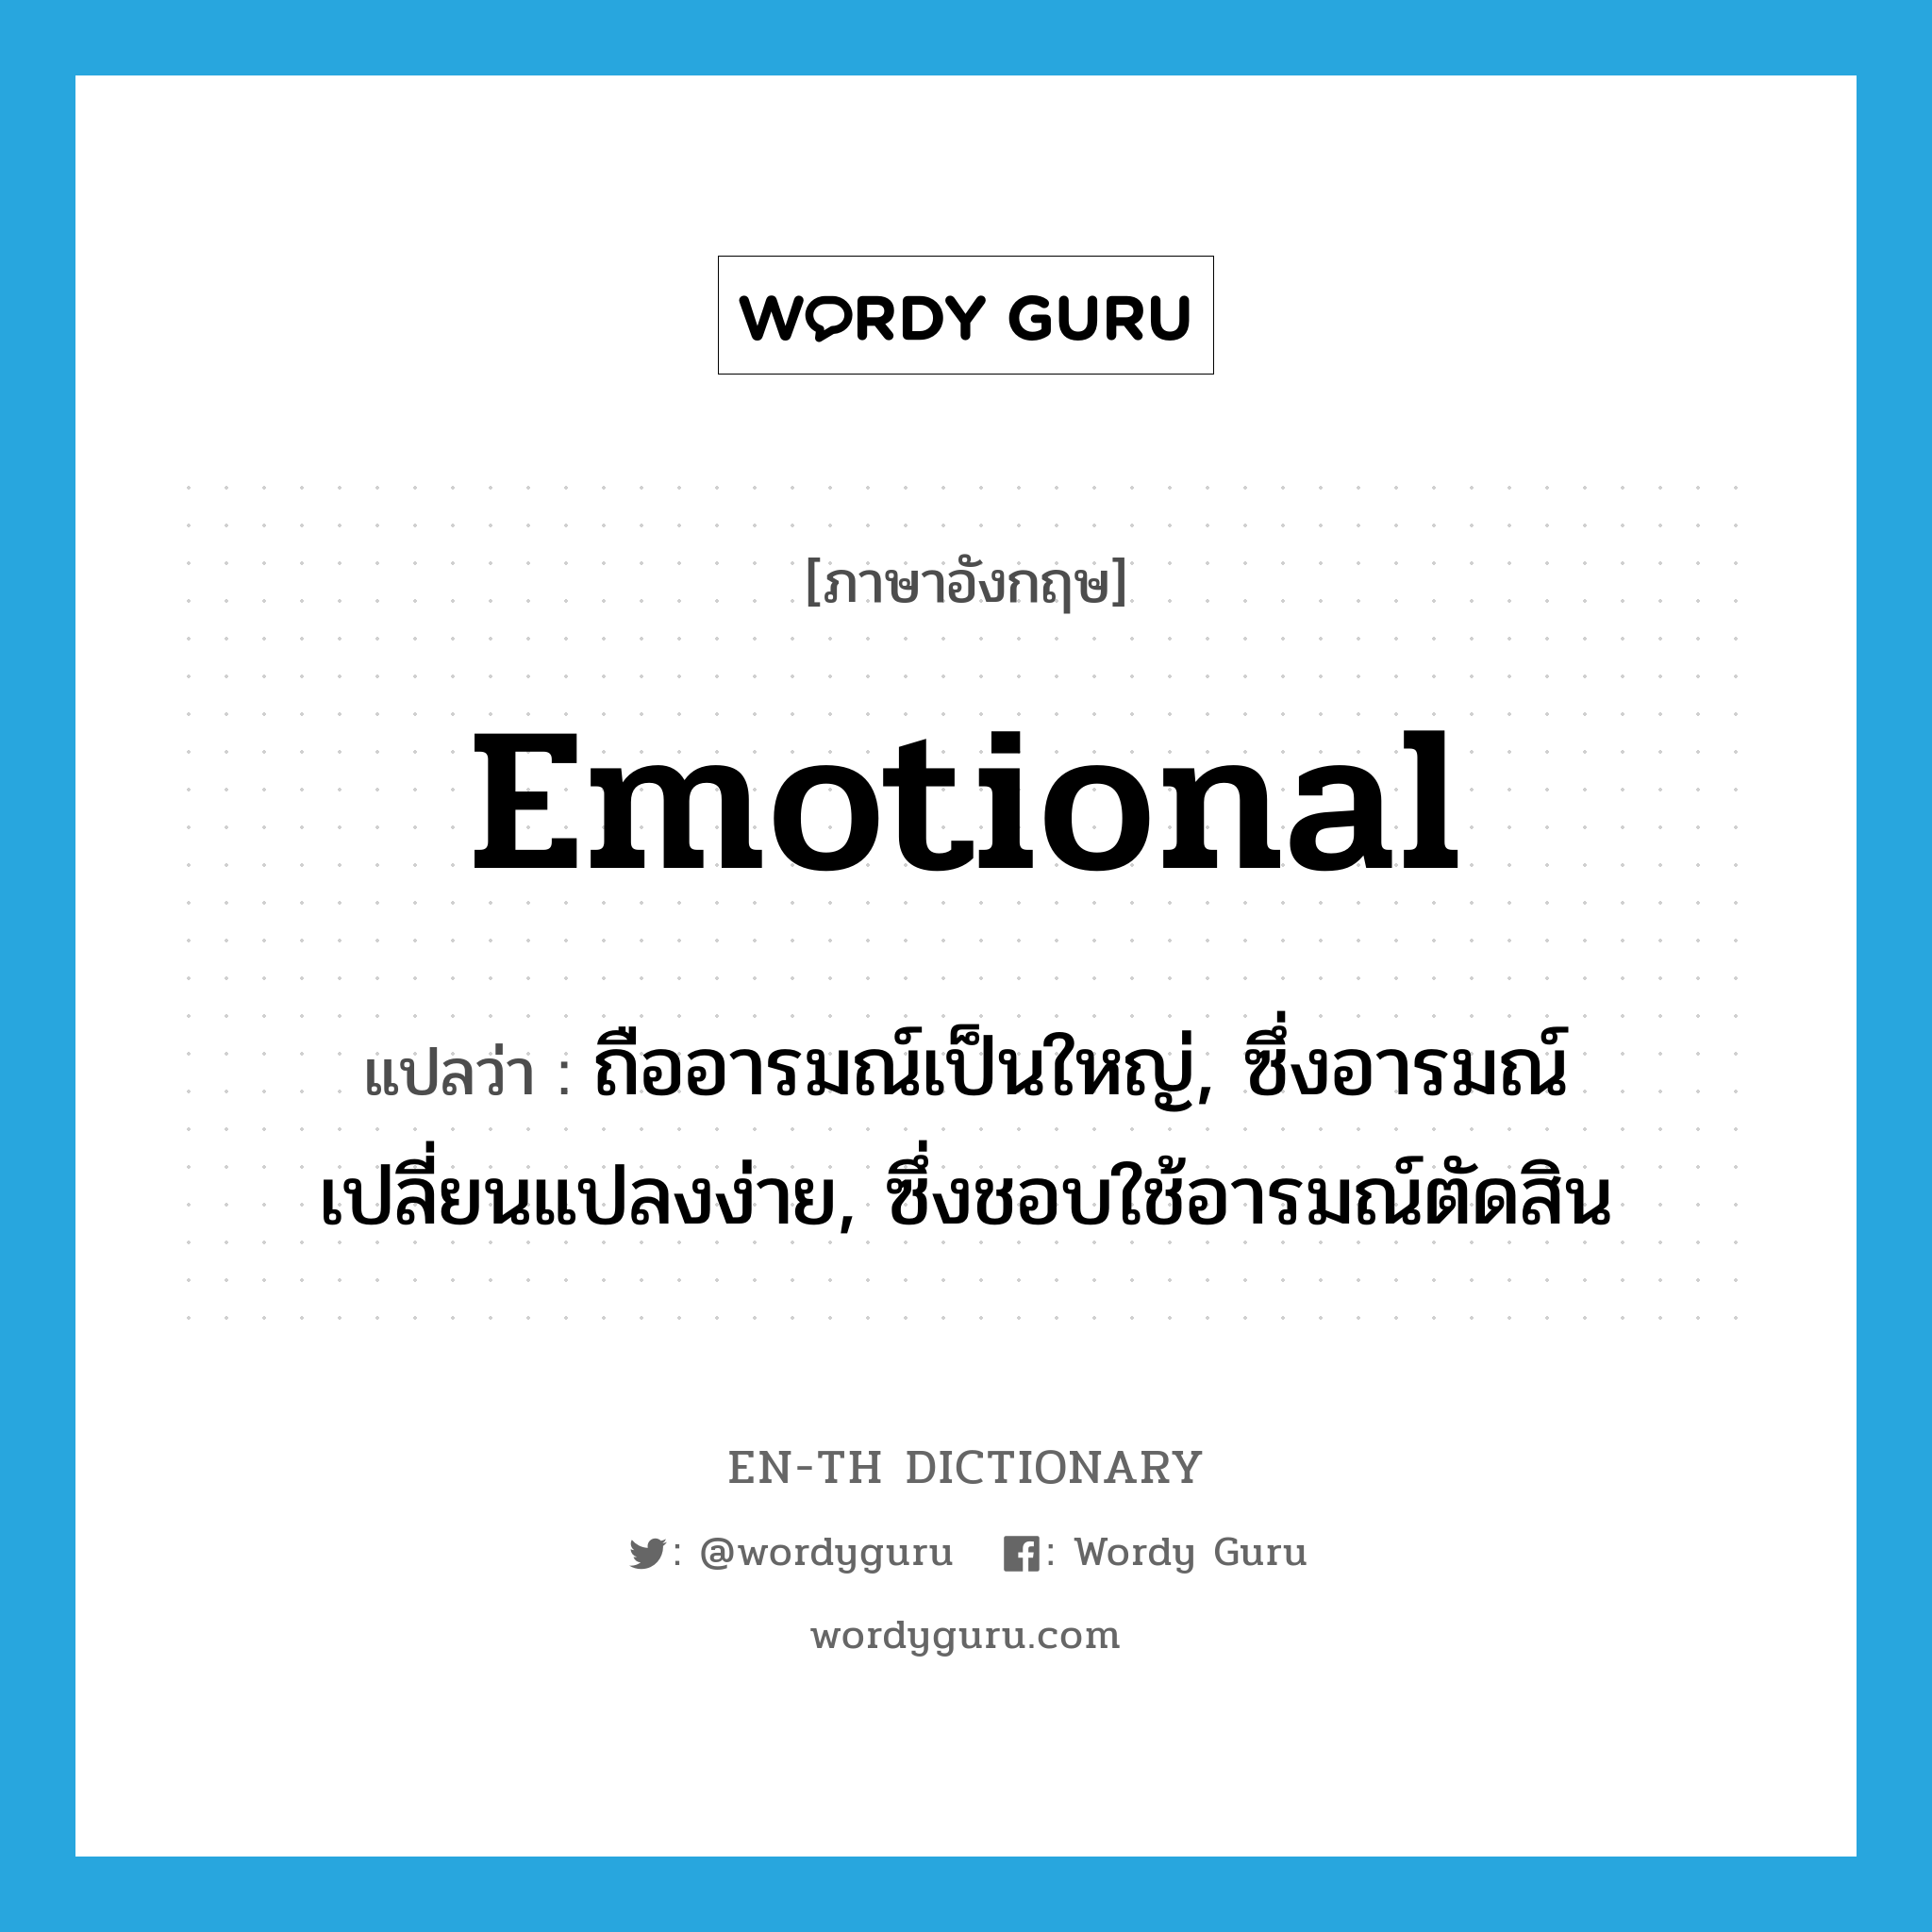 ถืออารมณ์เป็นใหญ่, ซึ่งอารมณ์เปลี่ยนแปลงง่าย, ซึ่งชอบใช้อารมณ์ตัดสิน ภาษาอังกฤษ?, คำศัพท์ภาษาอังกฤษ ถืออารมณ์เป็นใหญ่, ซึ่งอารมณ์เปลี่ยนแปลงง่าย, ซึ่งชอบใช้อารมณ์ตัดสิน แปลว่า emotional ประเภท ADJ หมวด ADJ